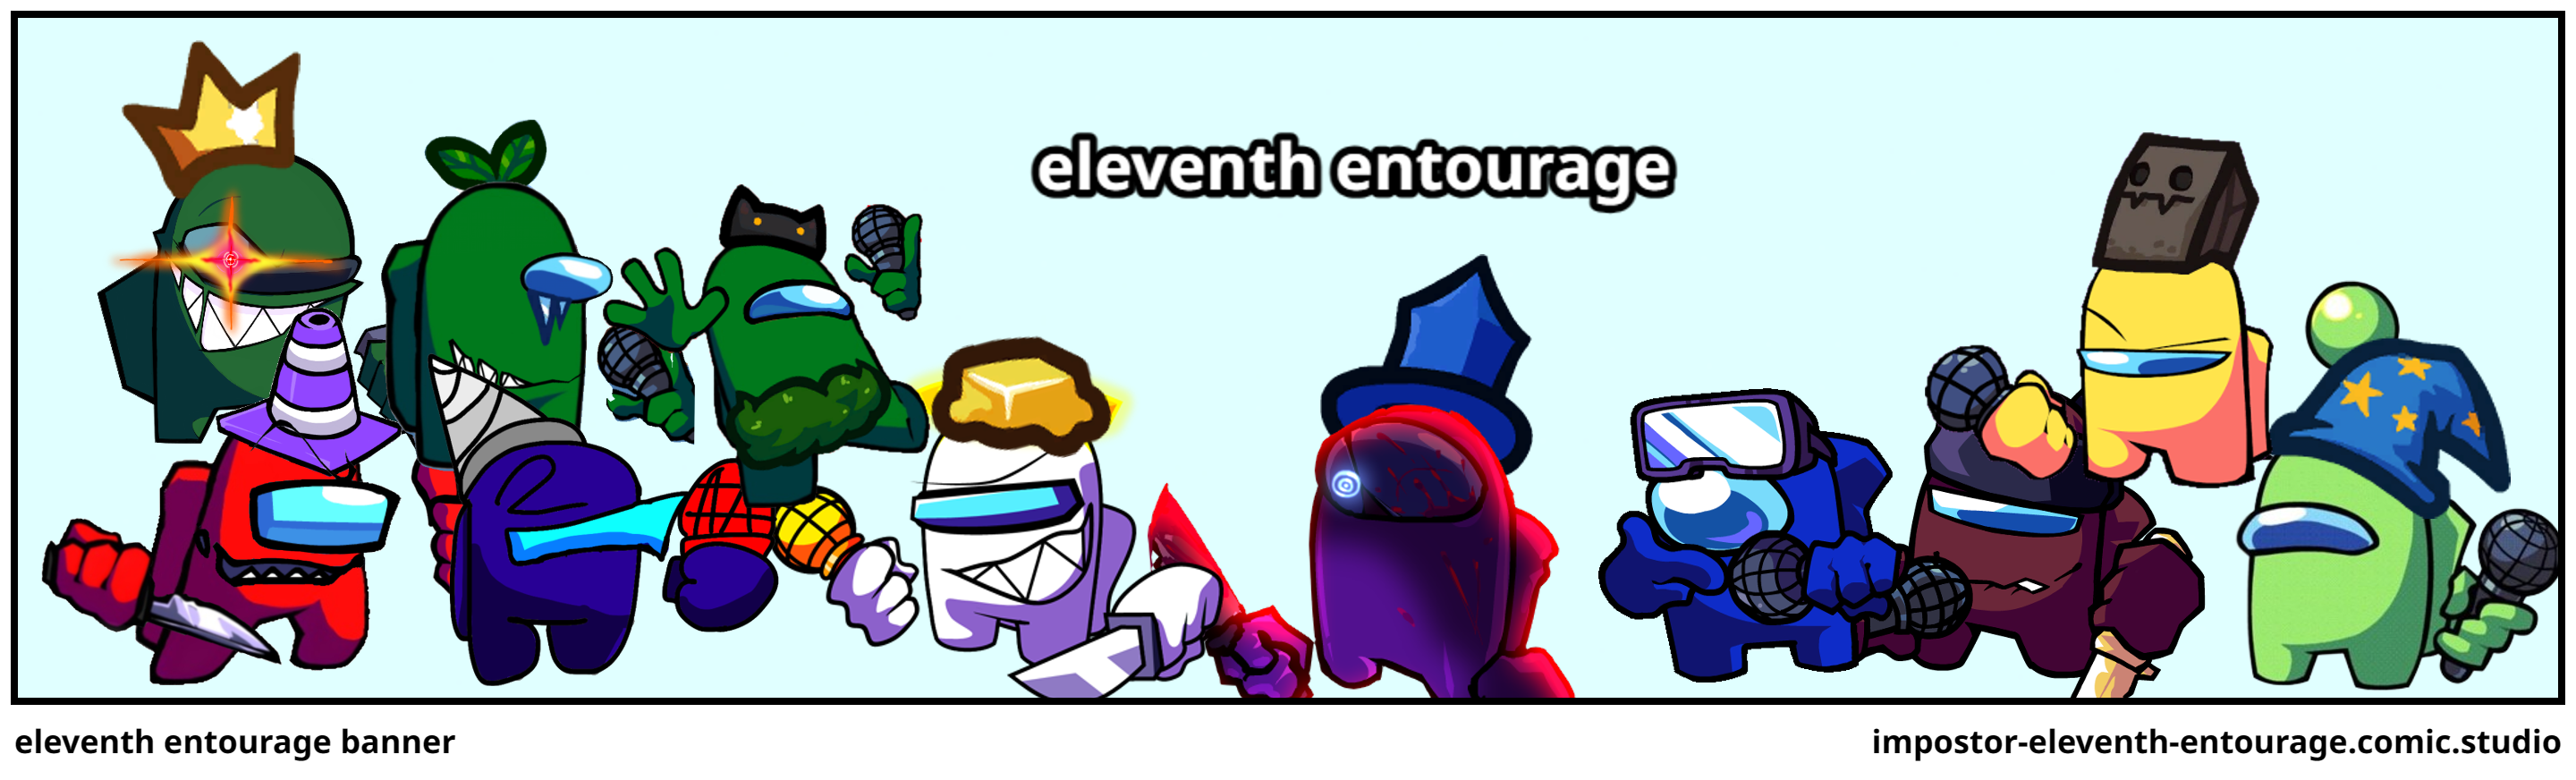 eleventh entourage banner